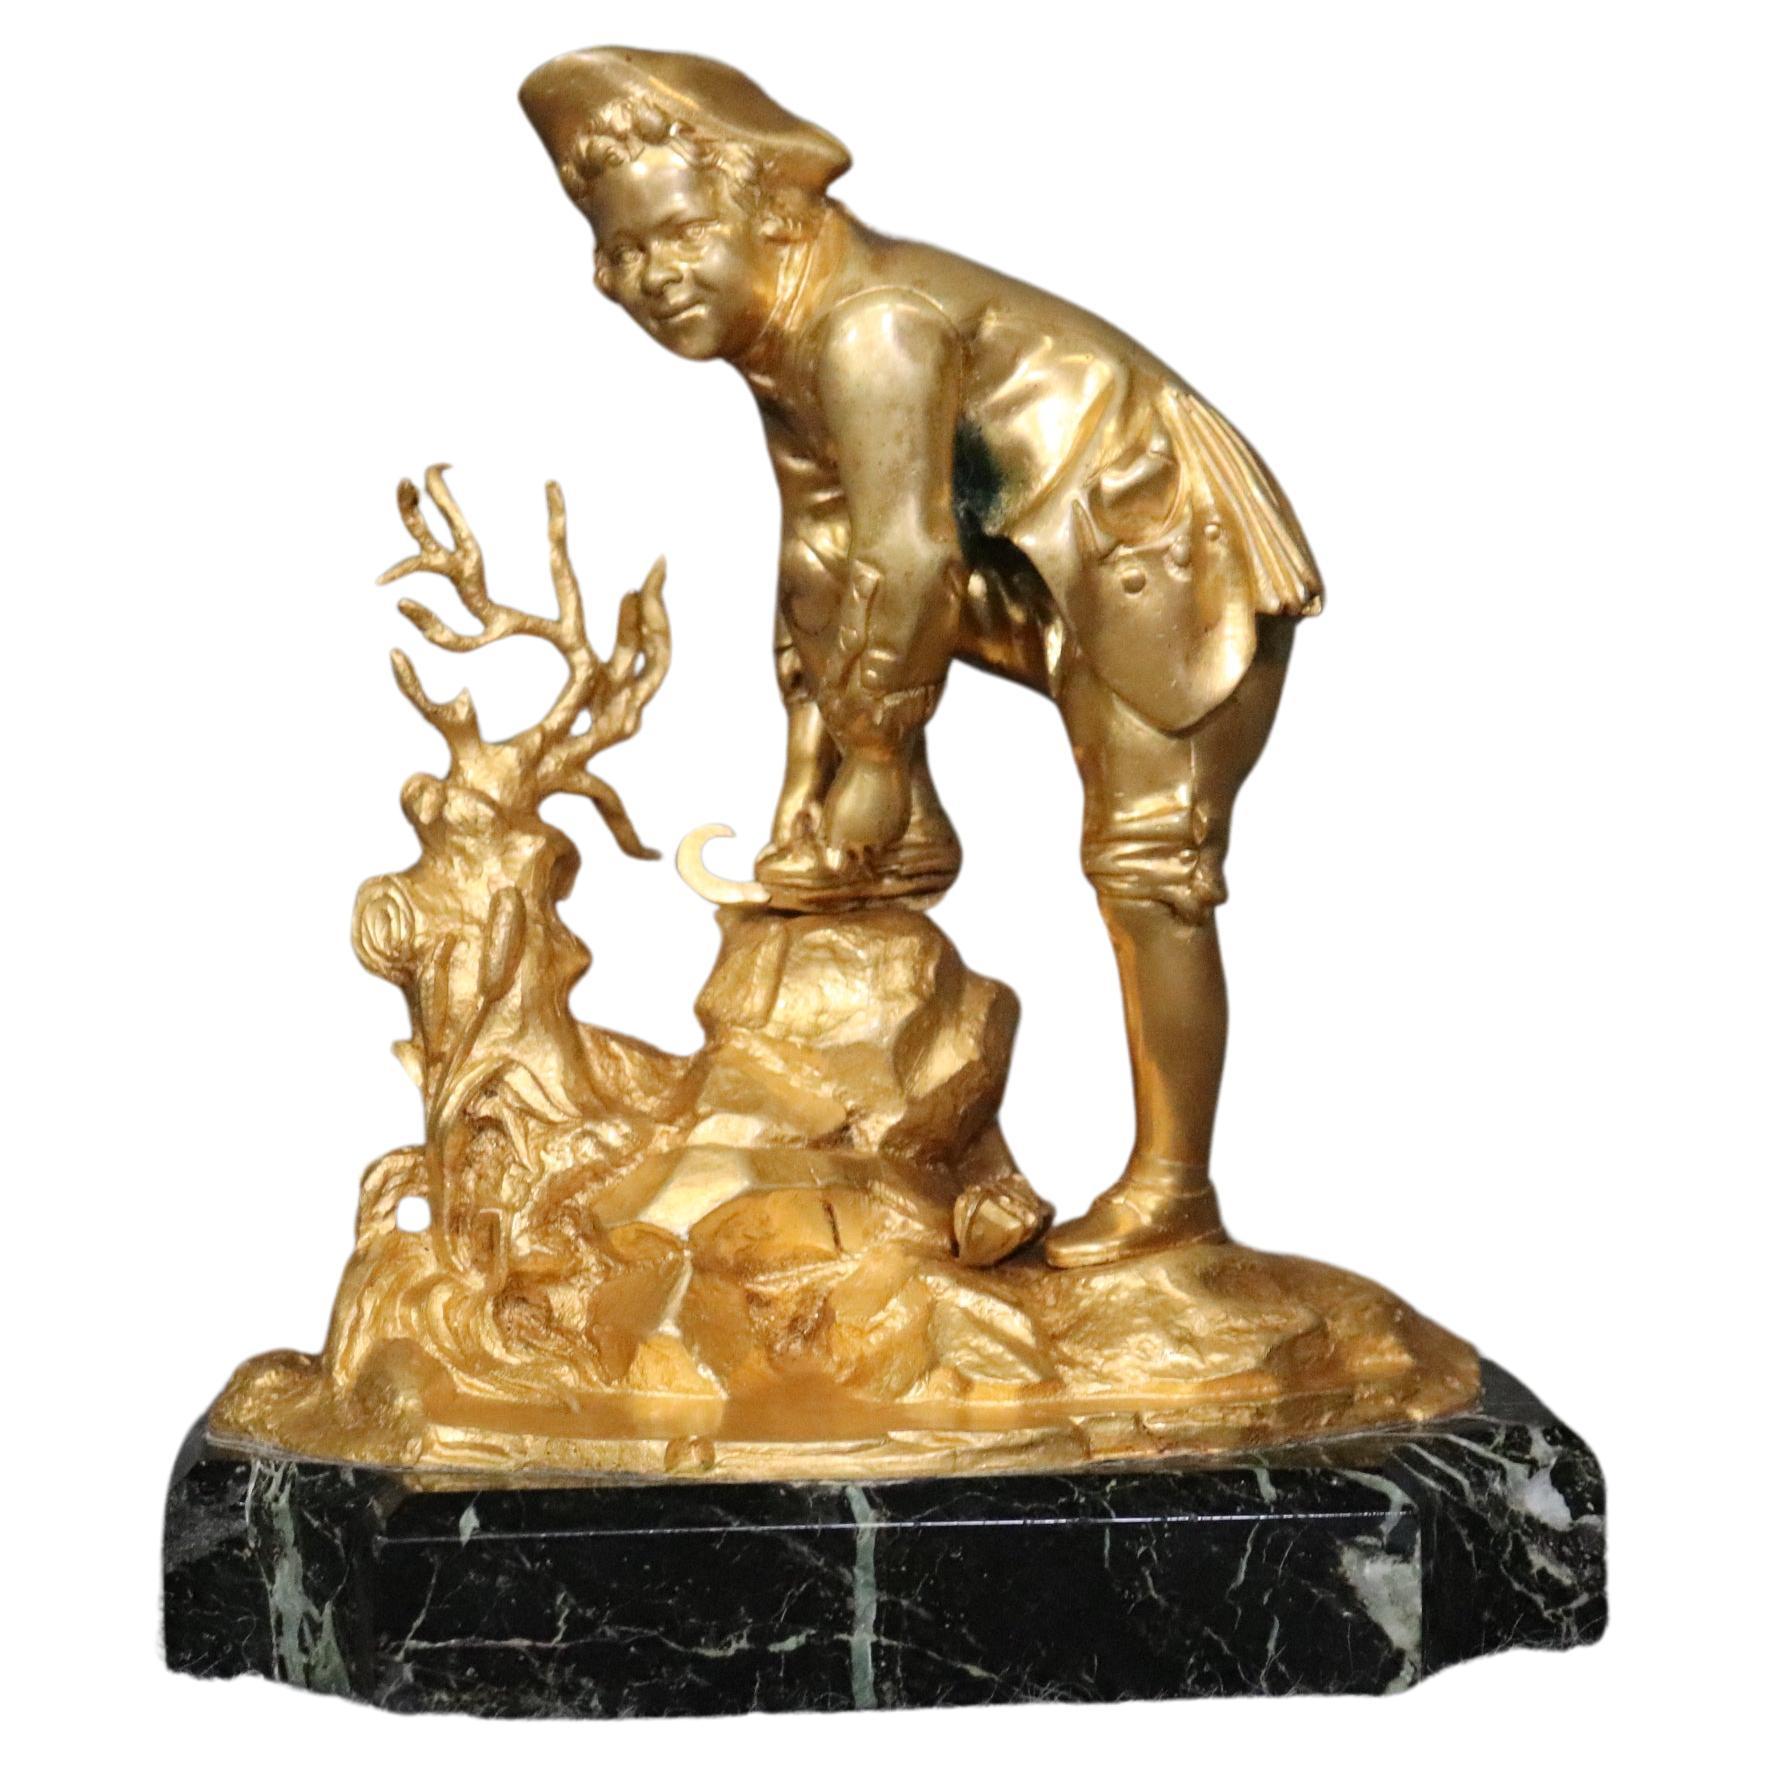 Sculpture russe en bronze doré de la fin du 19e siècle représentant un garçon sur une base en marbre